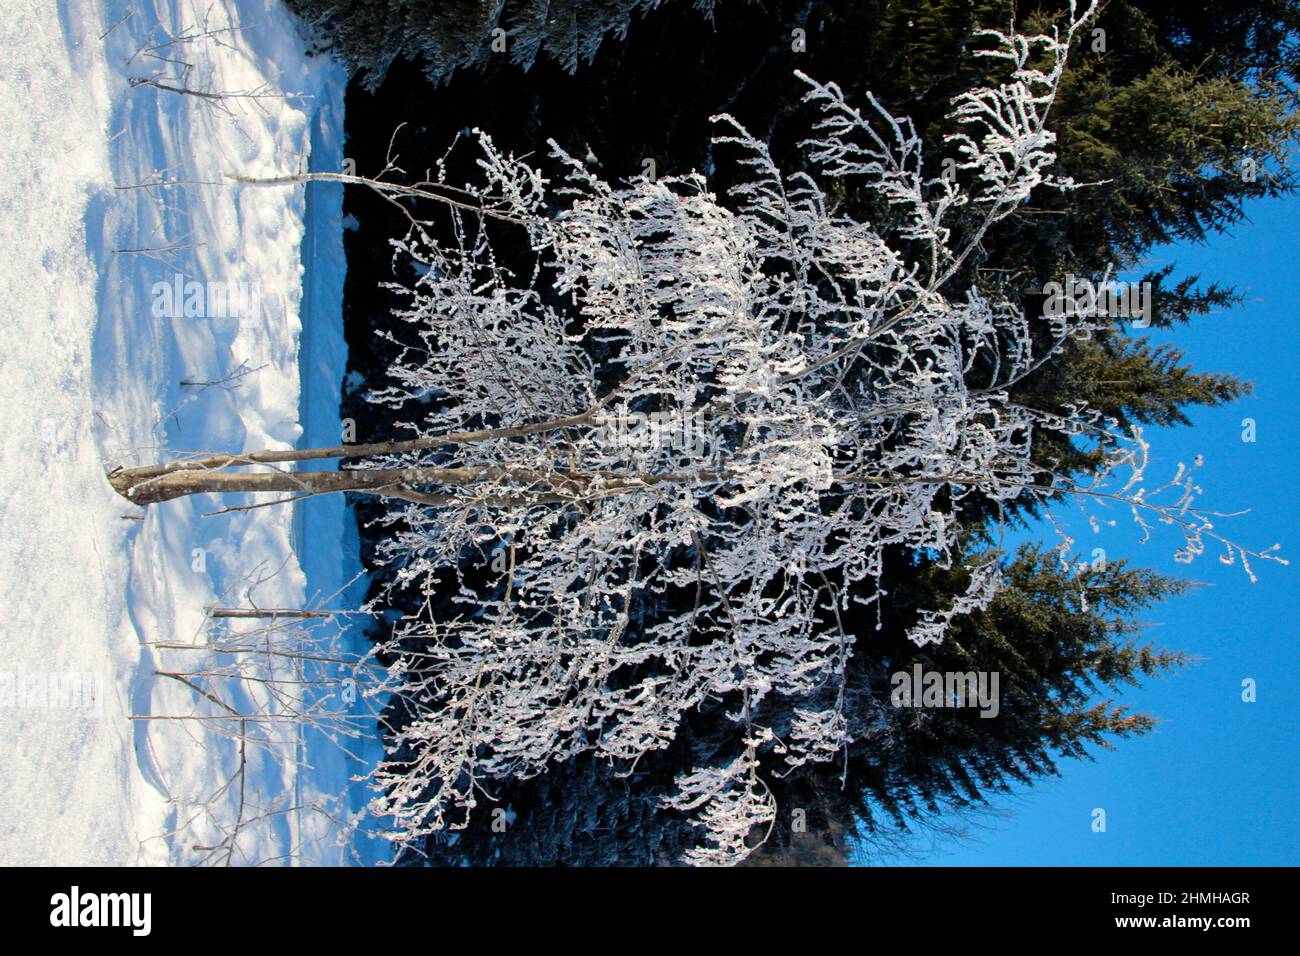 Escursione invernale tra Krün e Wallgau, cristalli di neve incantano il paesaggio invernale sognante, Germania meridionale, alta Baviera, neve, inverno, Nevoso, albero ghiacciato sopra, Germania, Baviera, Werdenfels, Krün Foto Stock